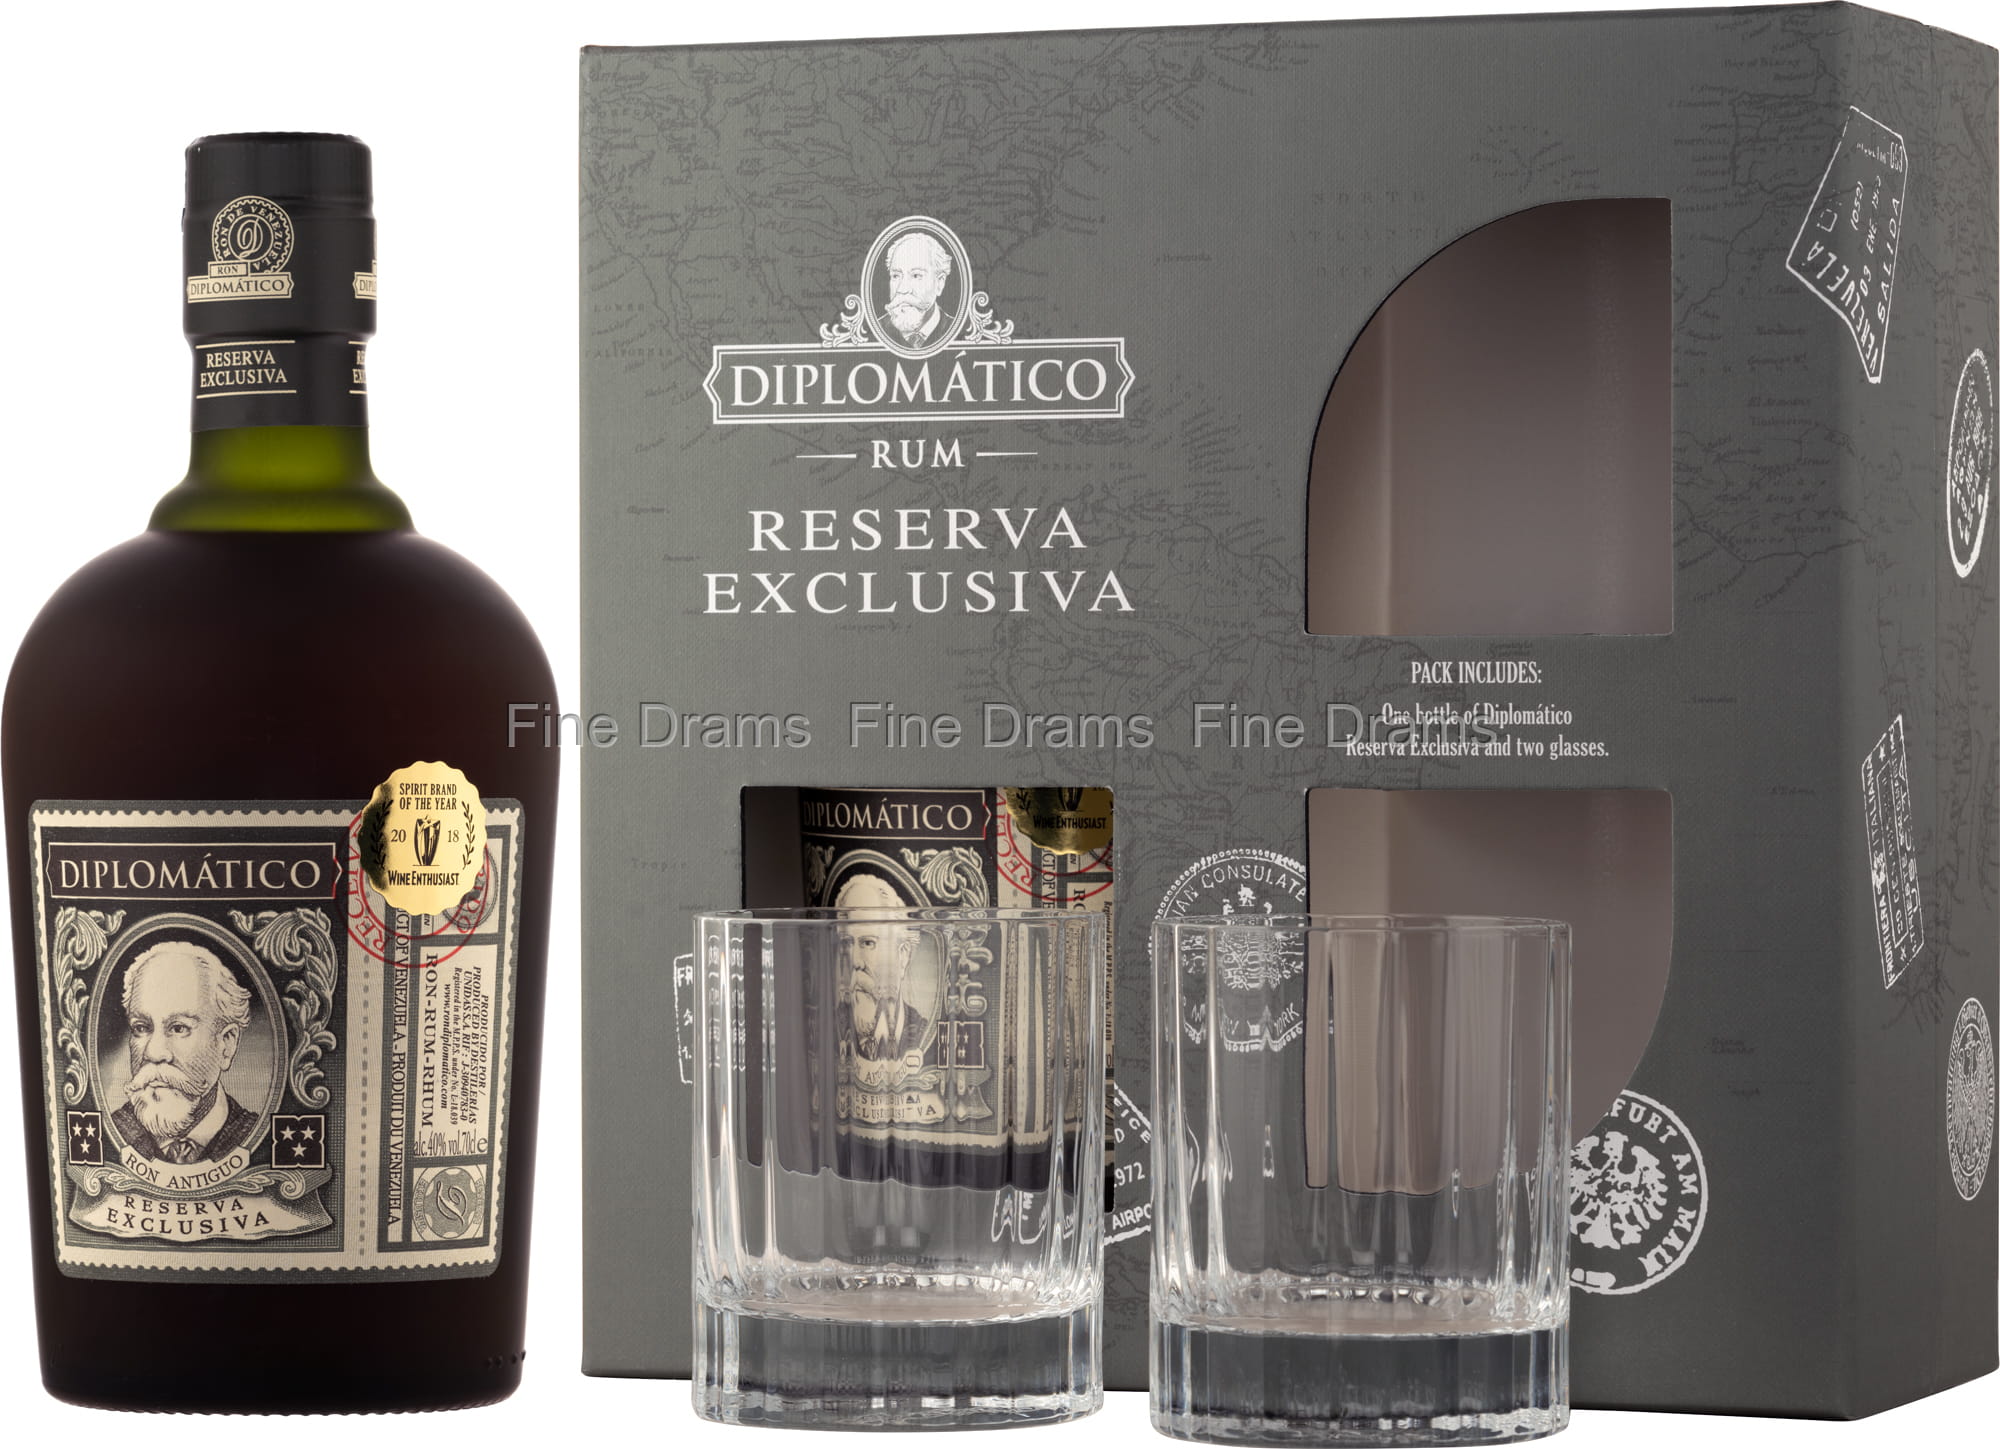 diplomatico exclusiva rum gift pack 2 glasses